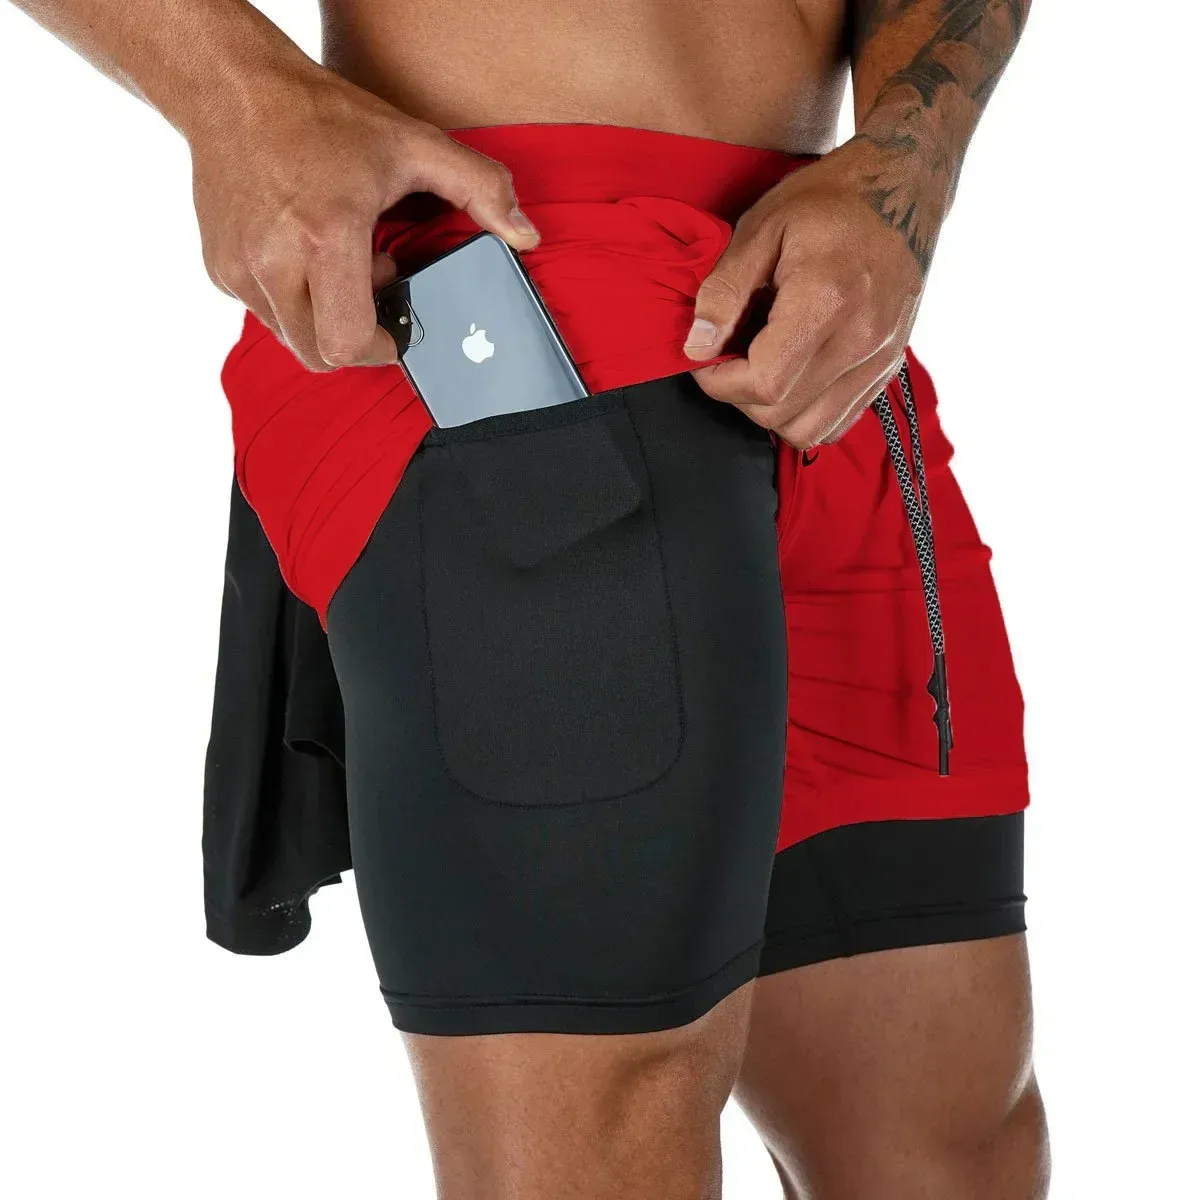 Personalizado al por mayor de impresión digital Swim Trunk Board Shorts Hombres más tamaño Casual Boardshorts Deportes Impreso Malla Hombres Shorts